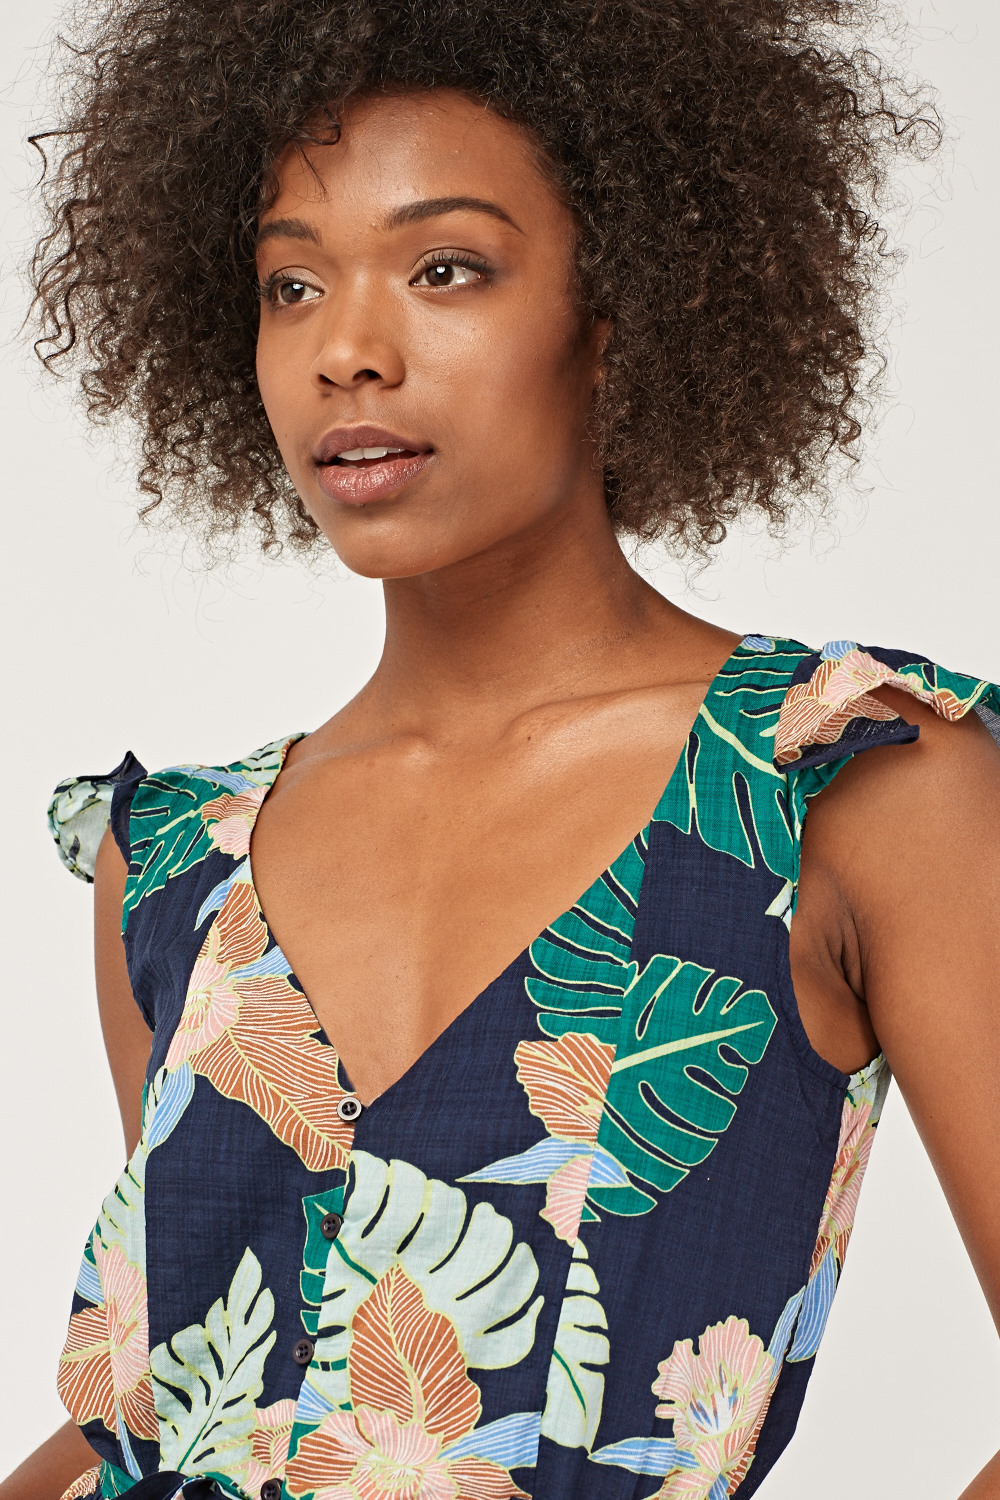 Tropical Palm Print Culotte Jumpsuit - Just $7